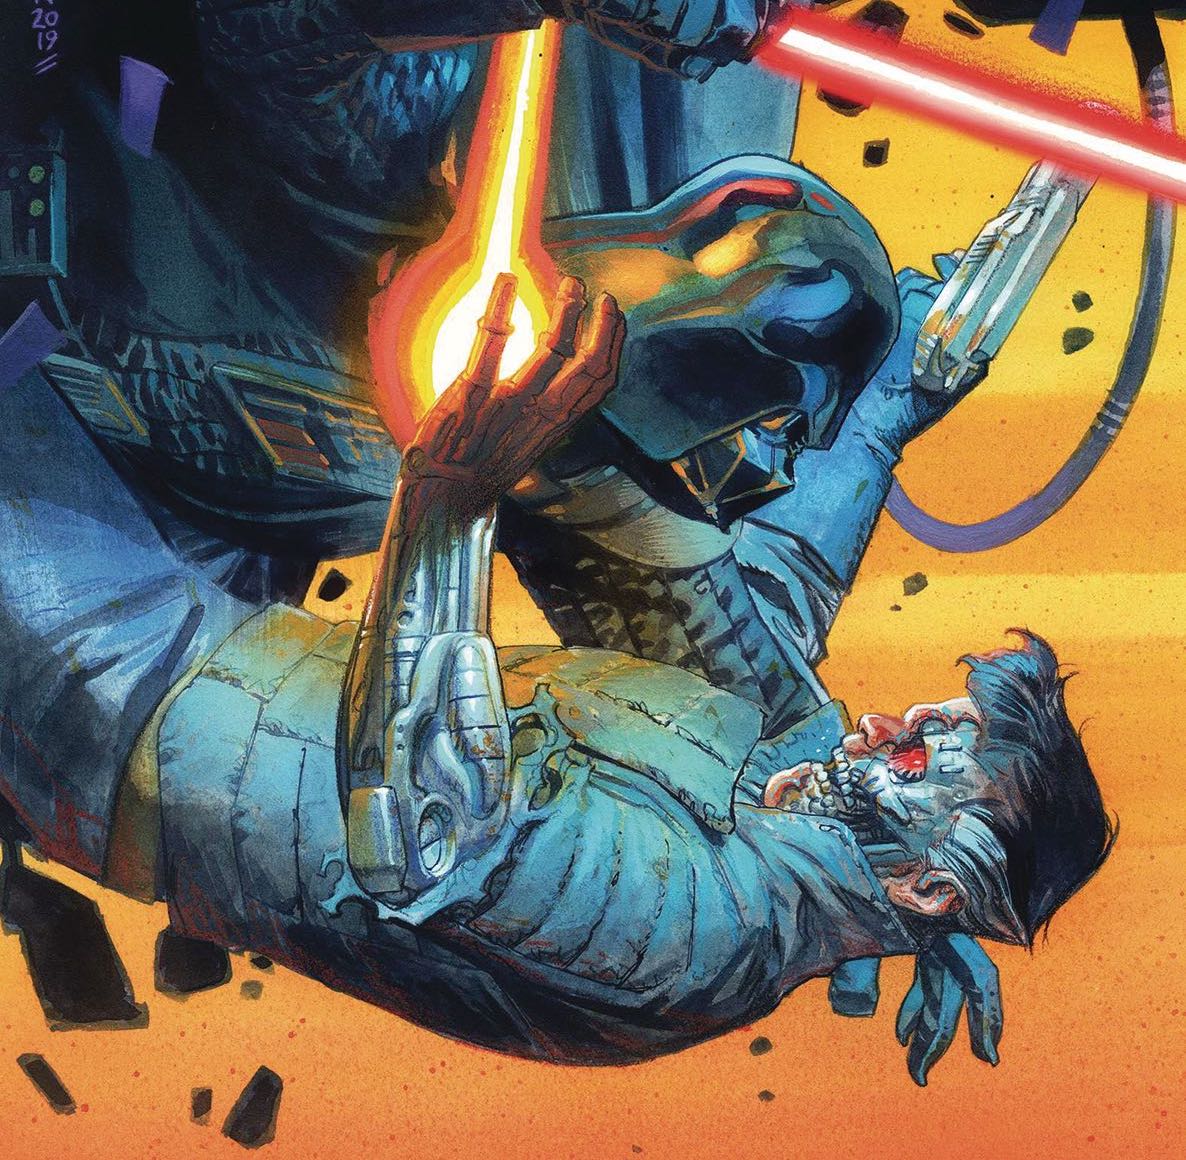 Marvel Preview: Star Wars: Target Vader #6